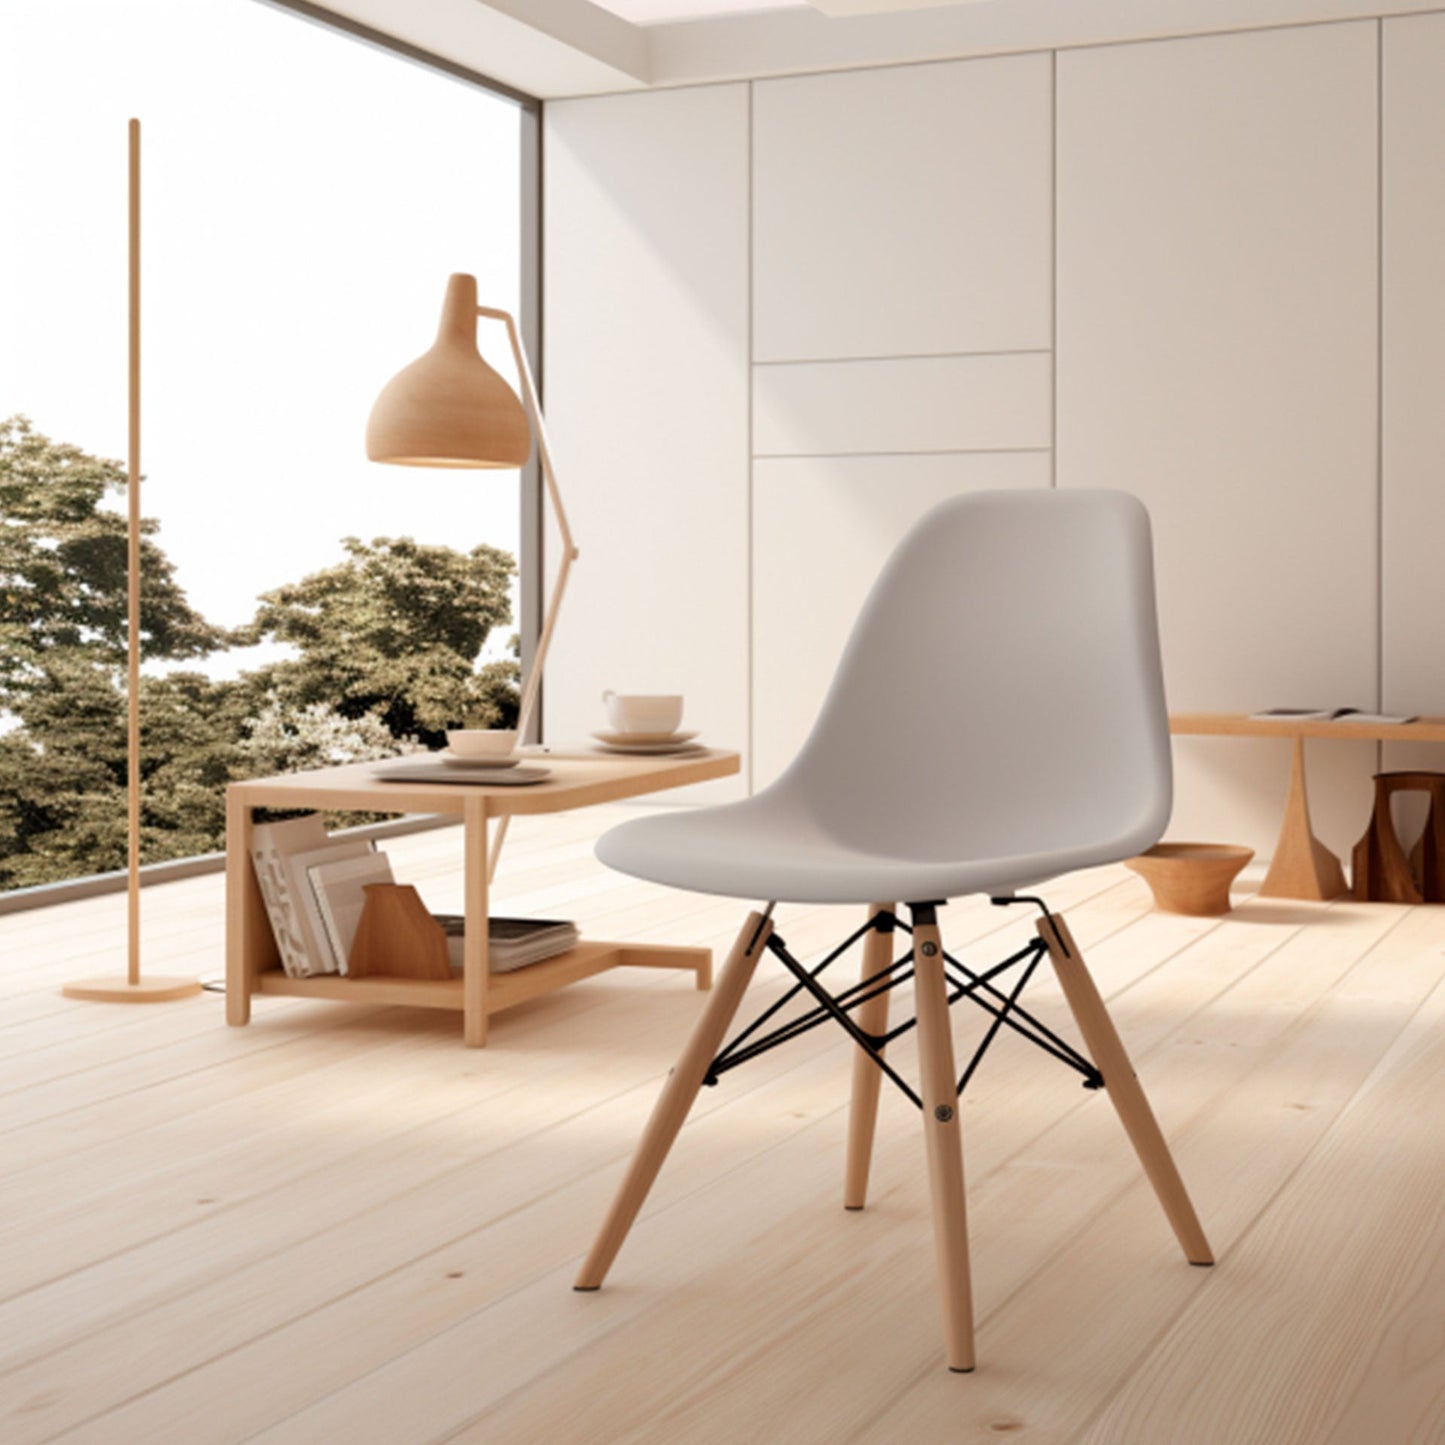 Silla Mirel Shell Minimalista para Comedor e interiores del hogar - Diseño moderno y ergonómico